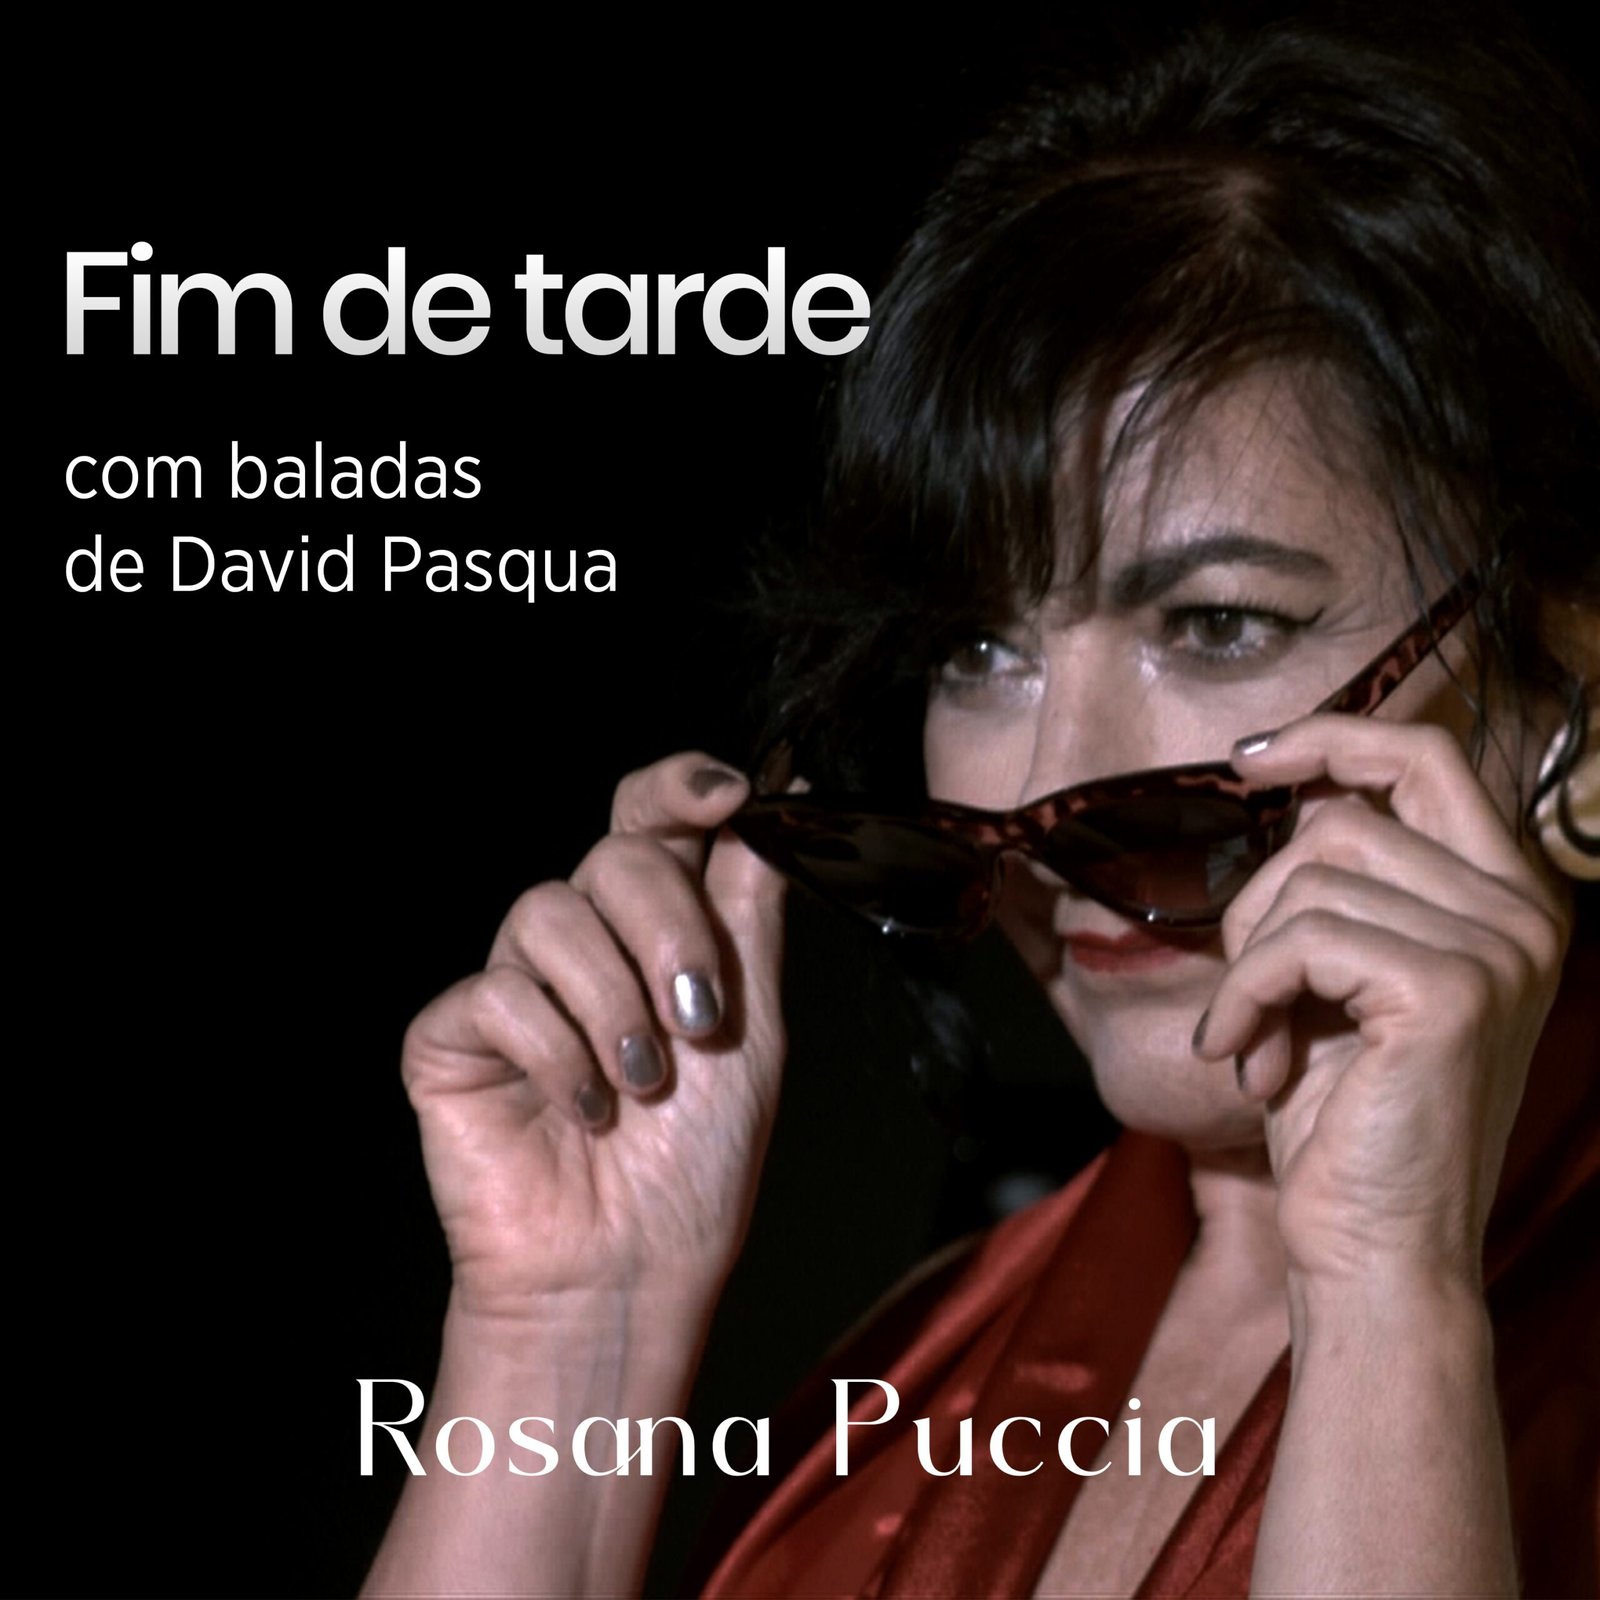 Rosana Puccia scaled POP CYBER